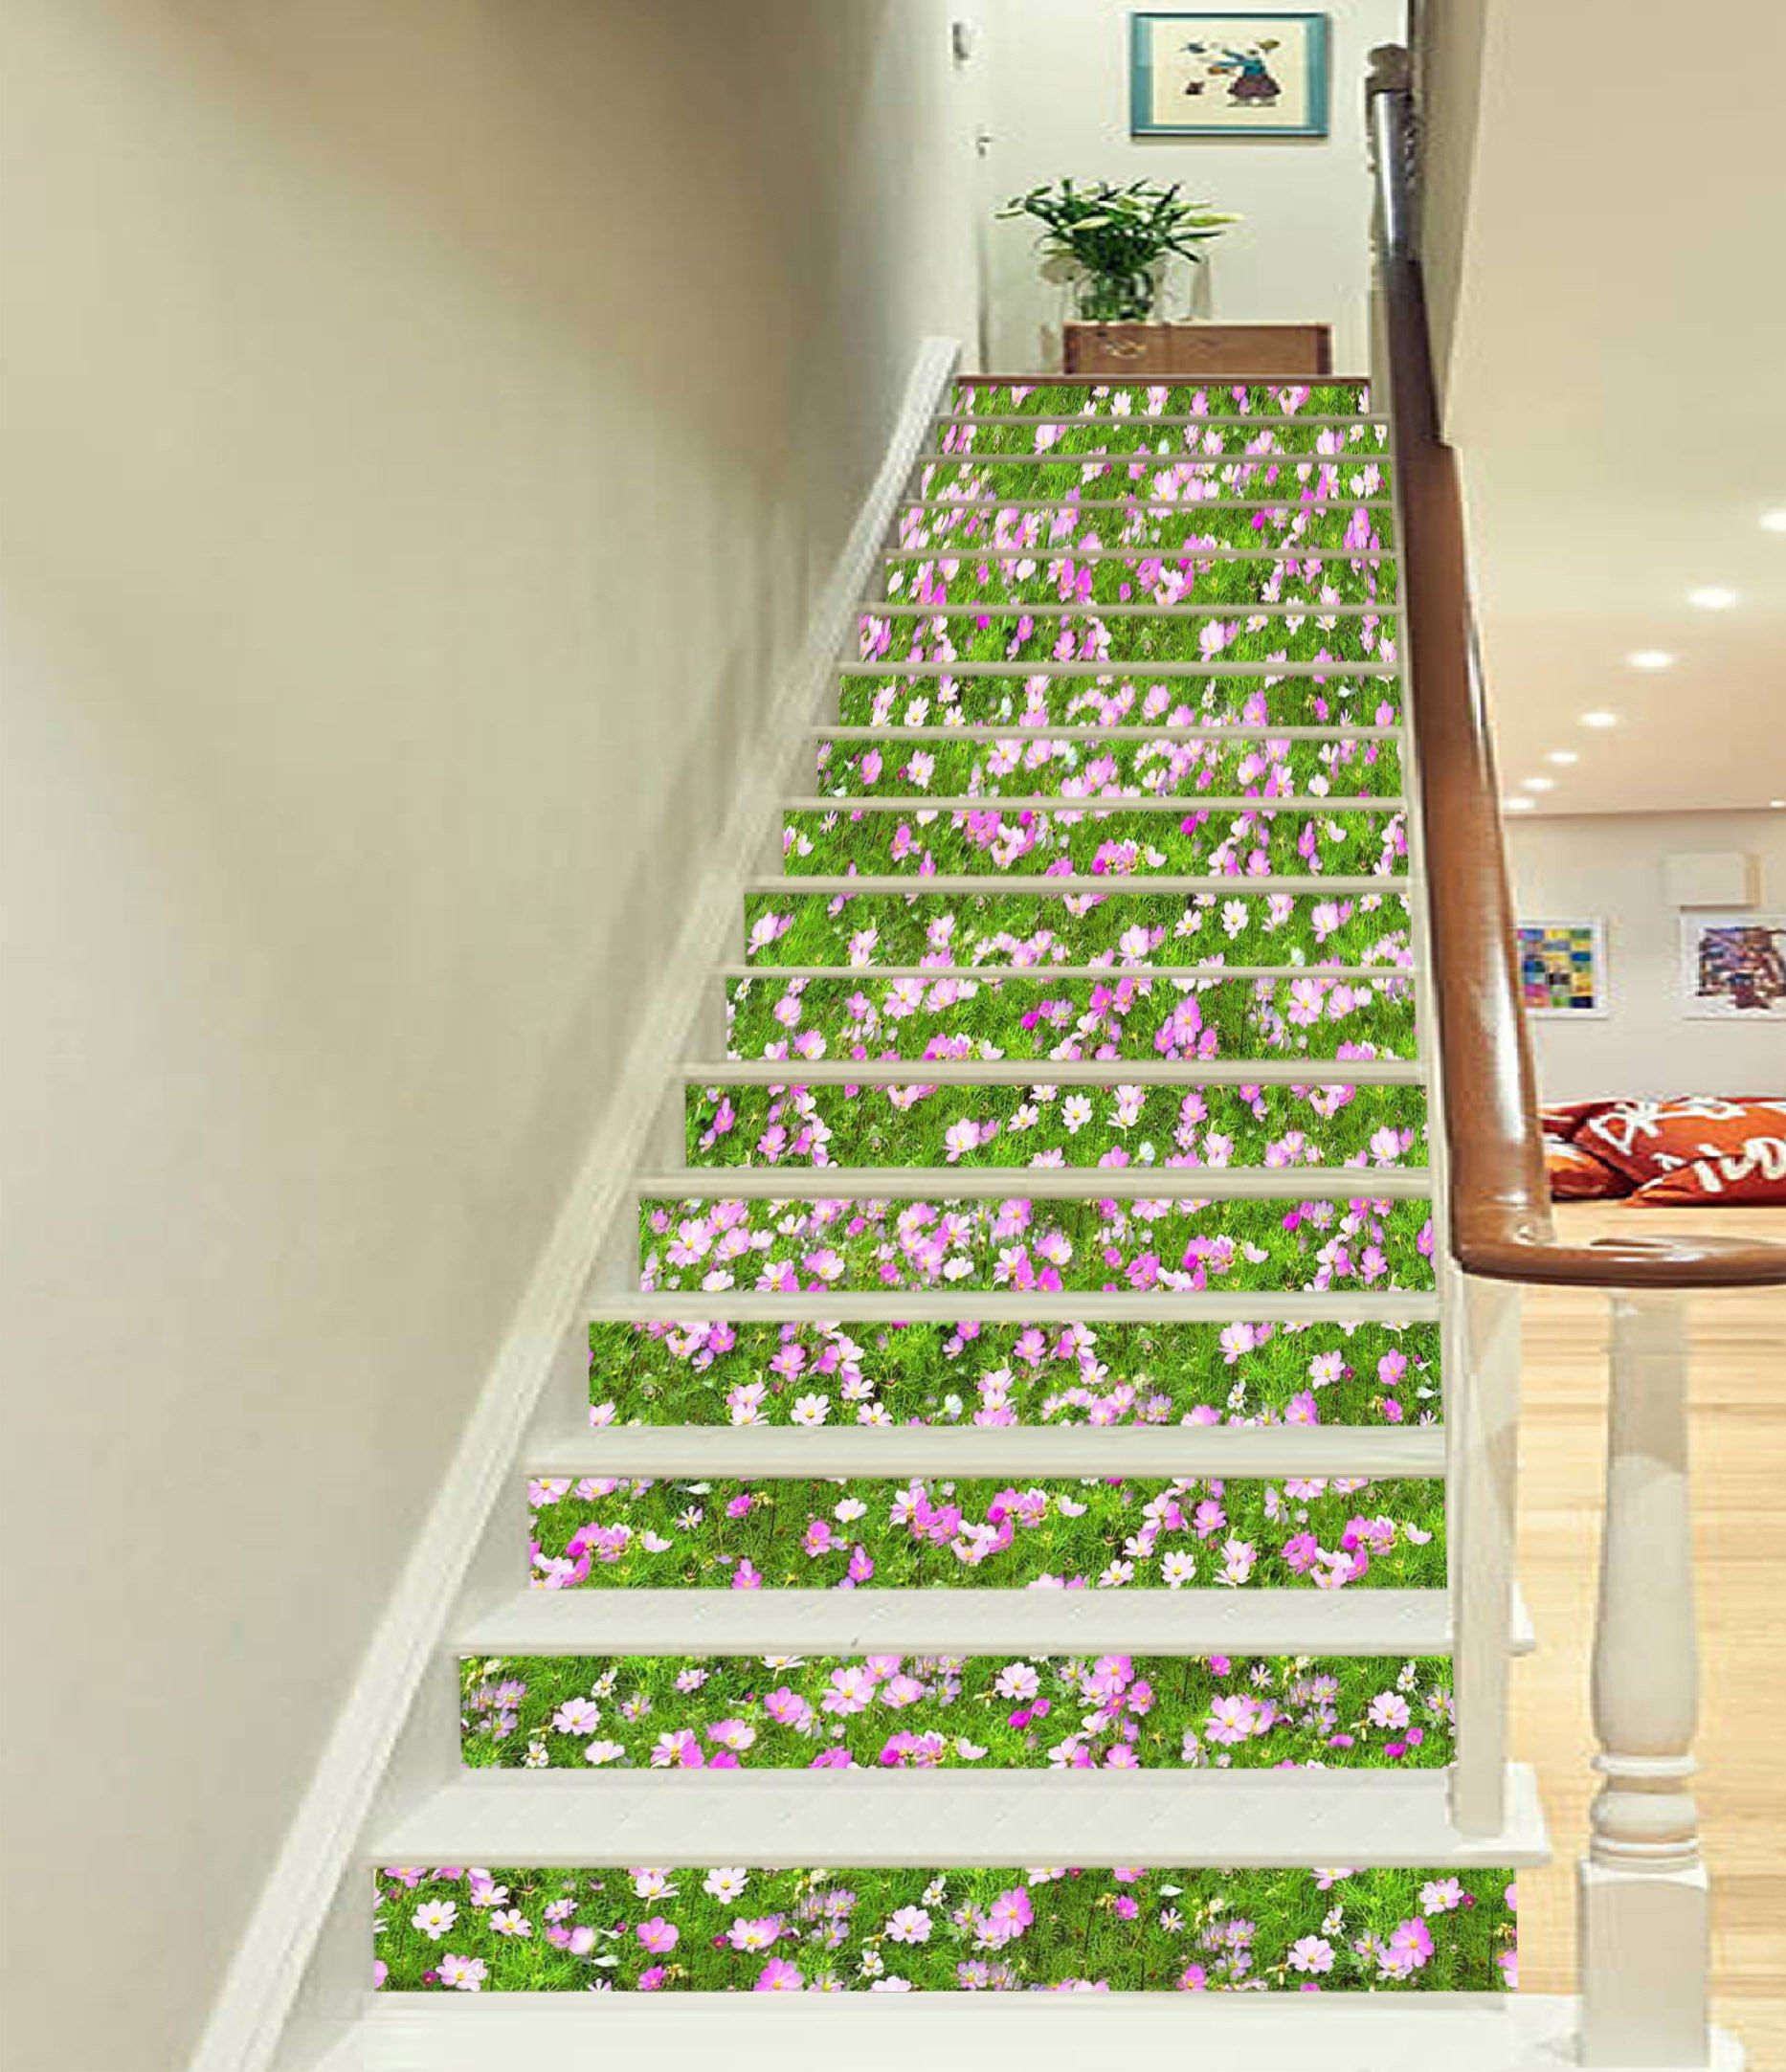 3D Grassland Flowers 418 Stair Risers Wallpaper AJ Wallpaper 